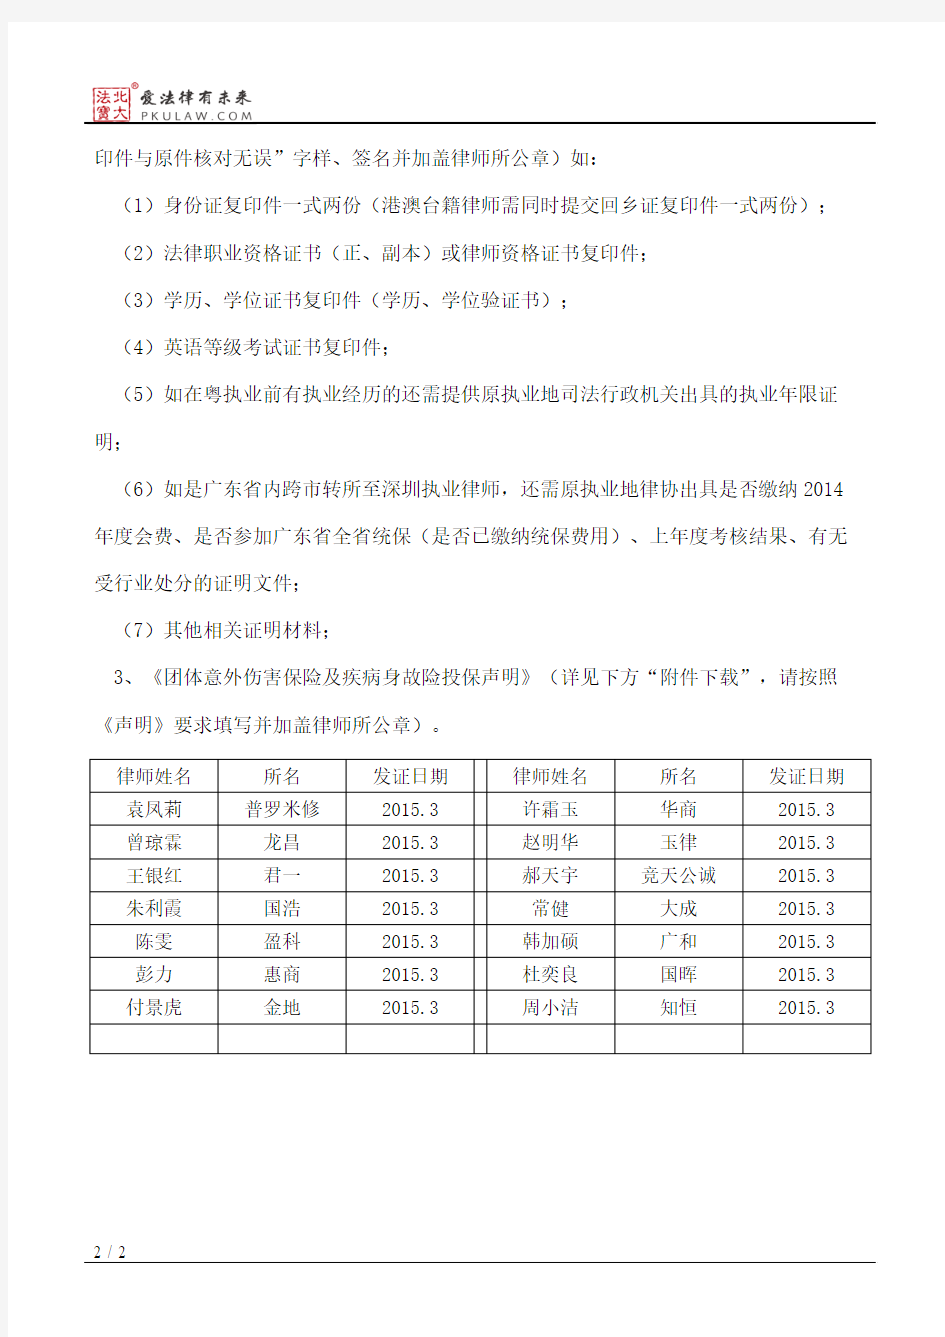 深圳市律师协会关于领取律师执业证及律师所材料的通知